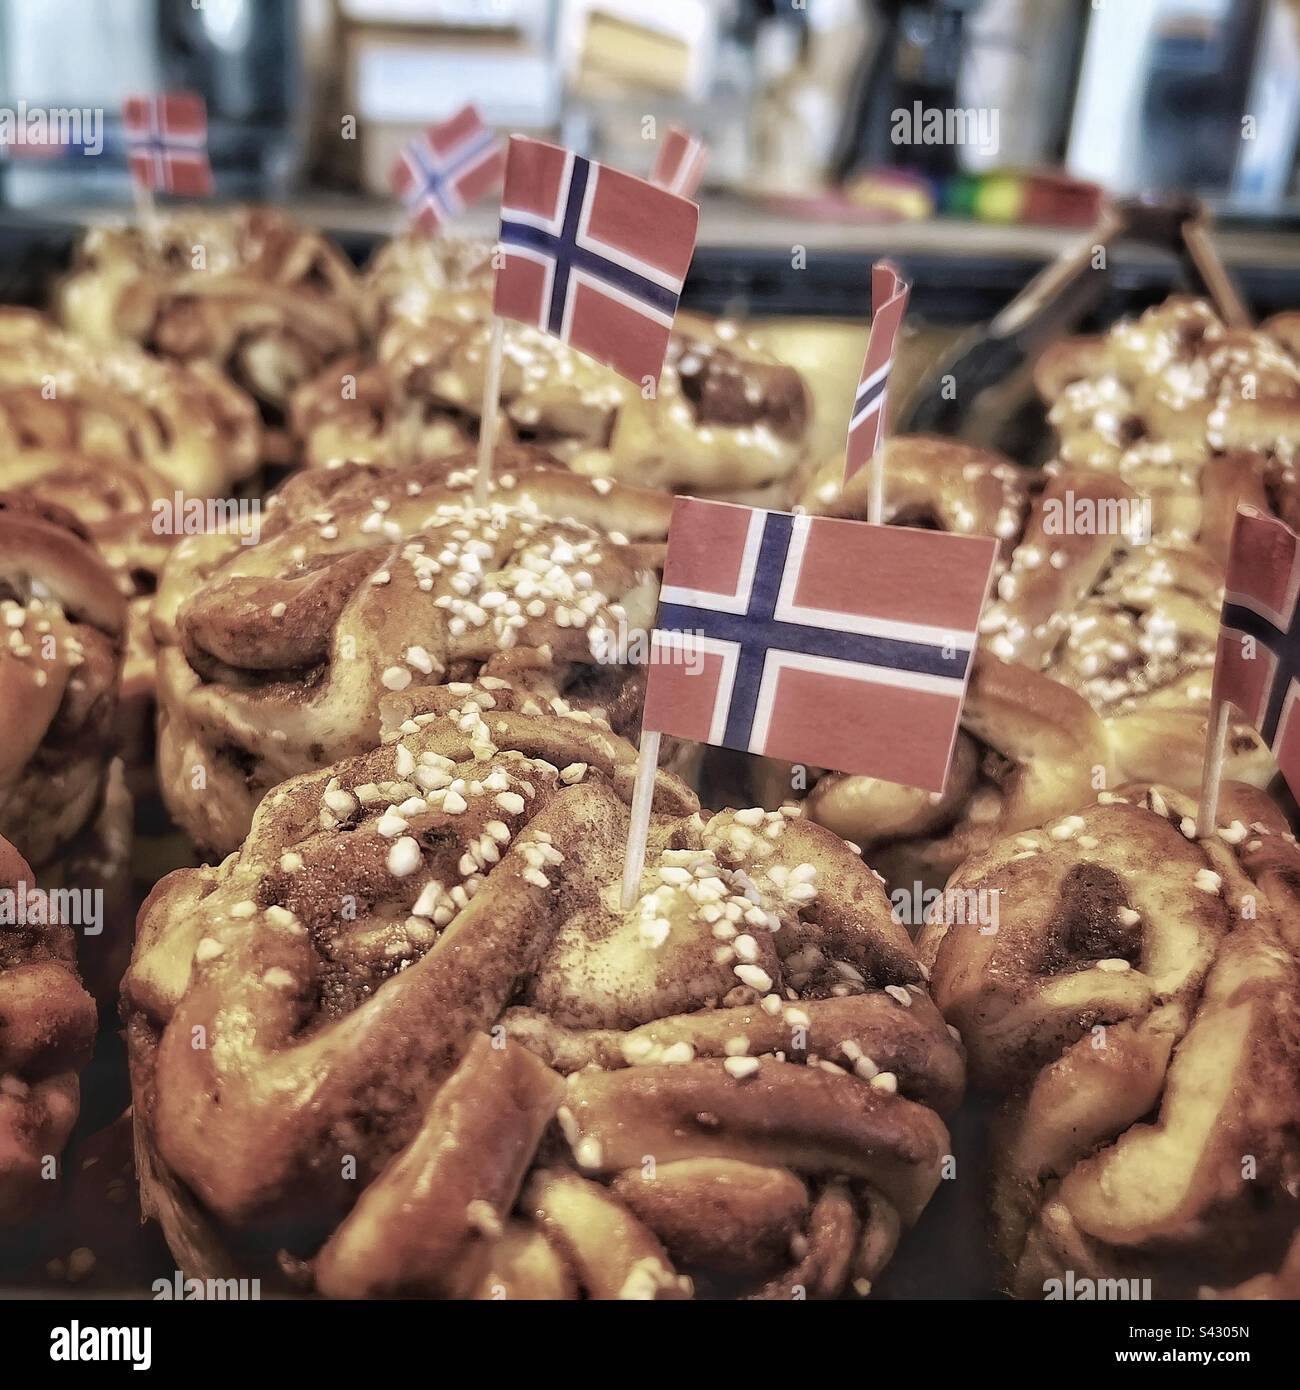 Kanelbullar (schwedische Zimtbrötchen) in einer Bäckerei - Stockholm, Schweden Stockfoto